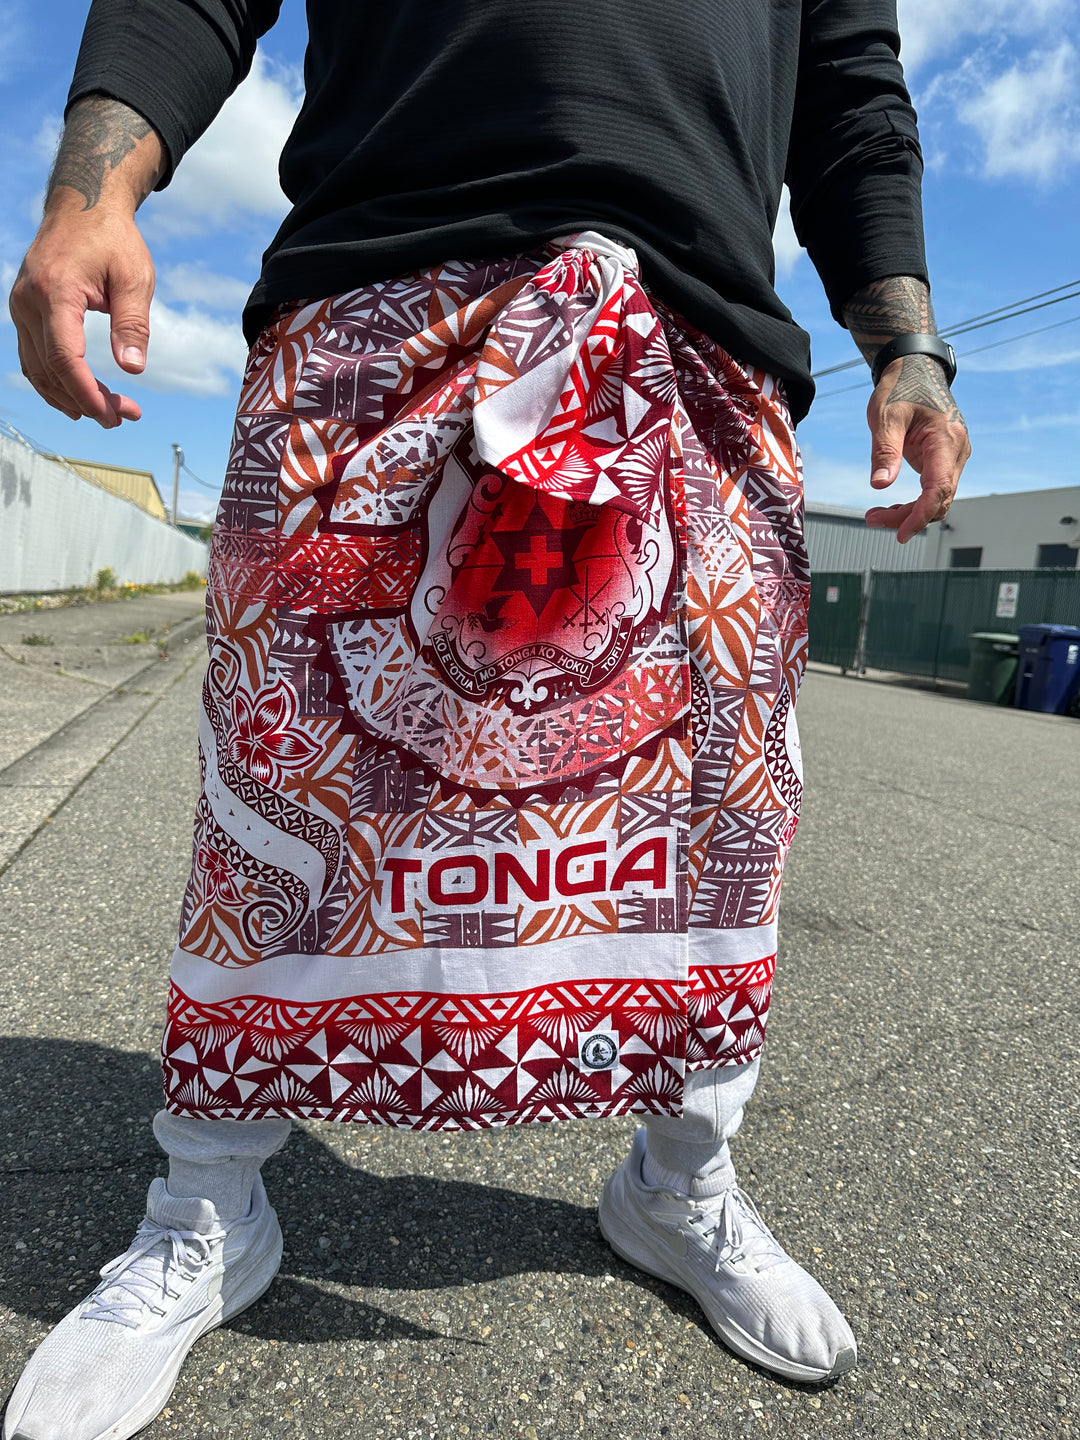 Tonga (Maroon)